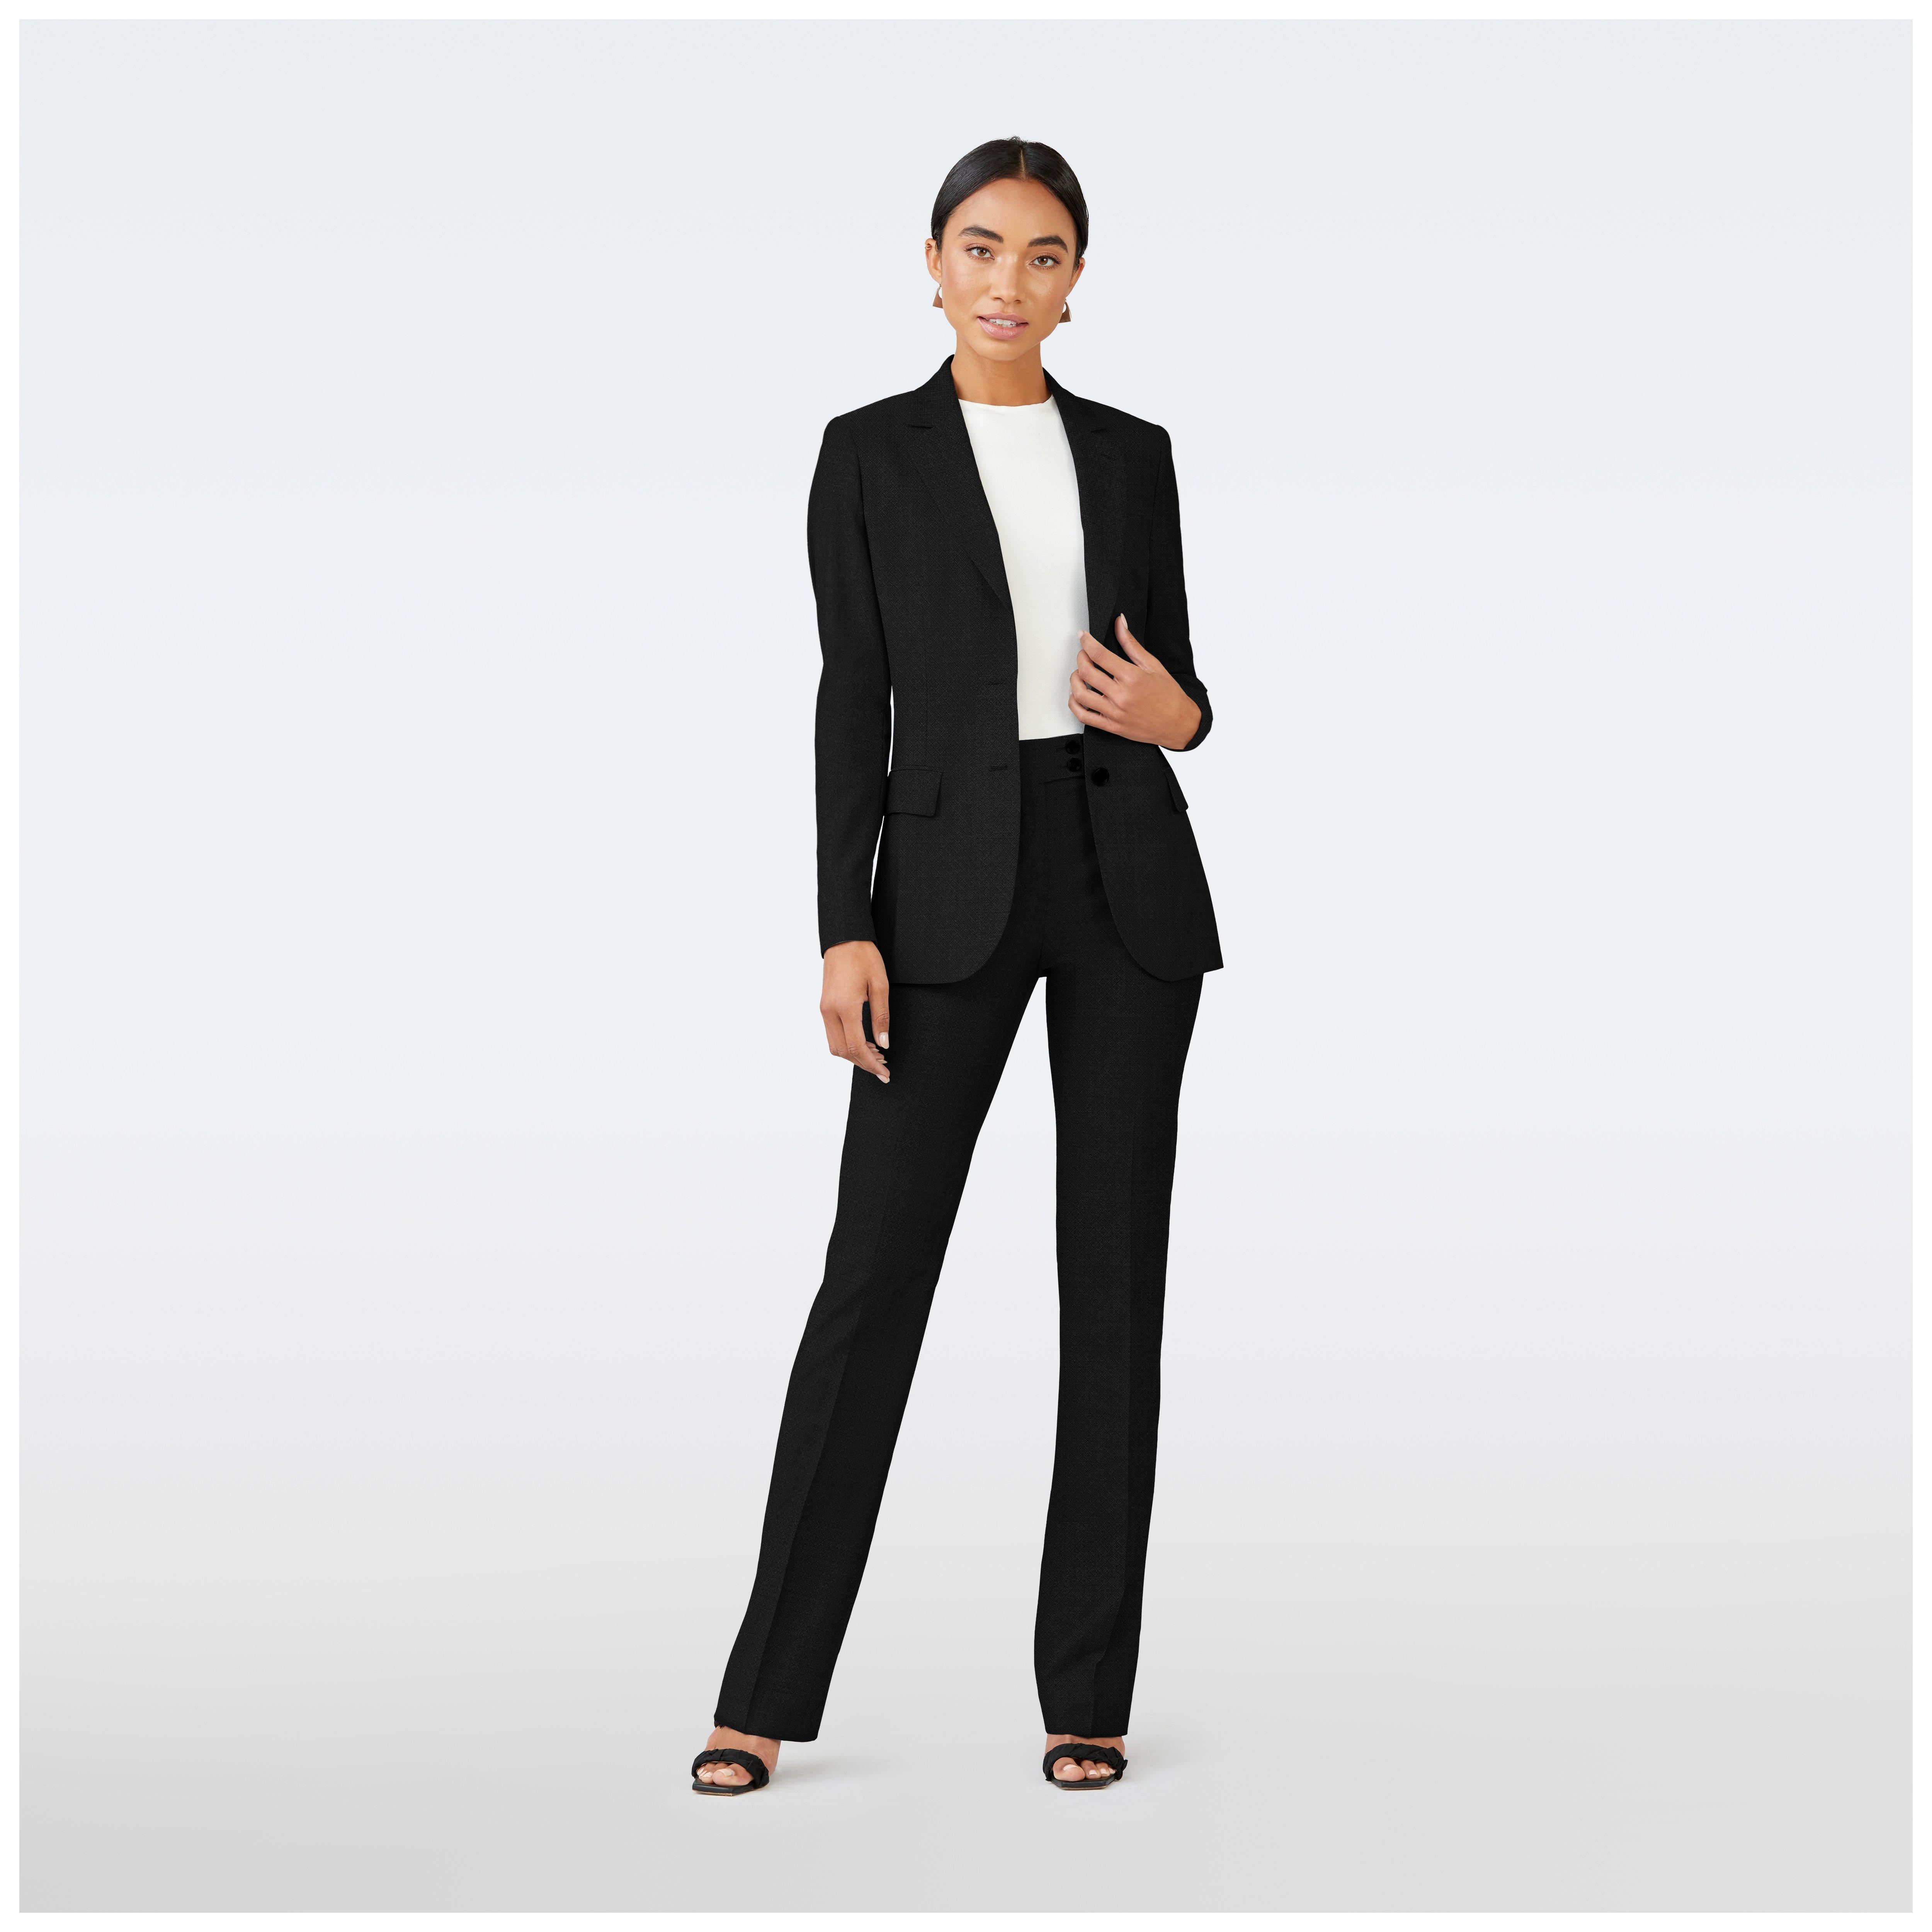 Rust Suit for Women/ GIRL Pant Suit/women's Tuxedo /women Pant  Suit/business Suit Women/women Tailored Suit/womens Coats Suit Set -   Canada